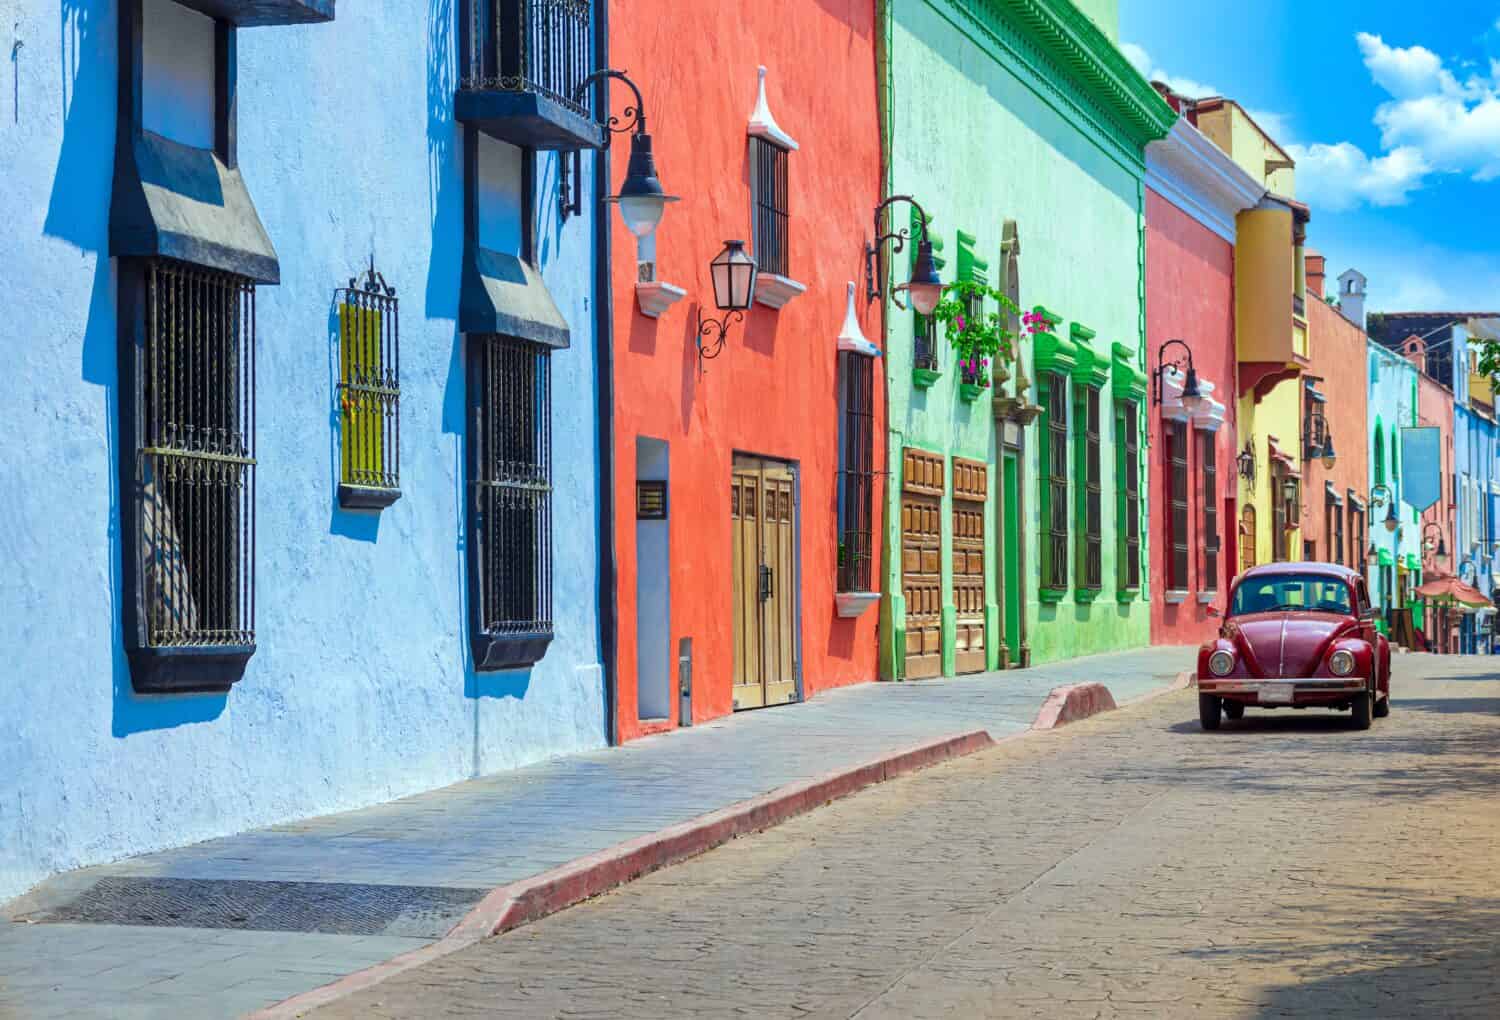 Architettura coloniale colorata e scenografica delle strade di Cuernavaca nel centro storico del Messico Morelos.